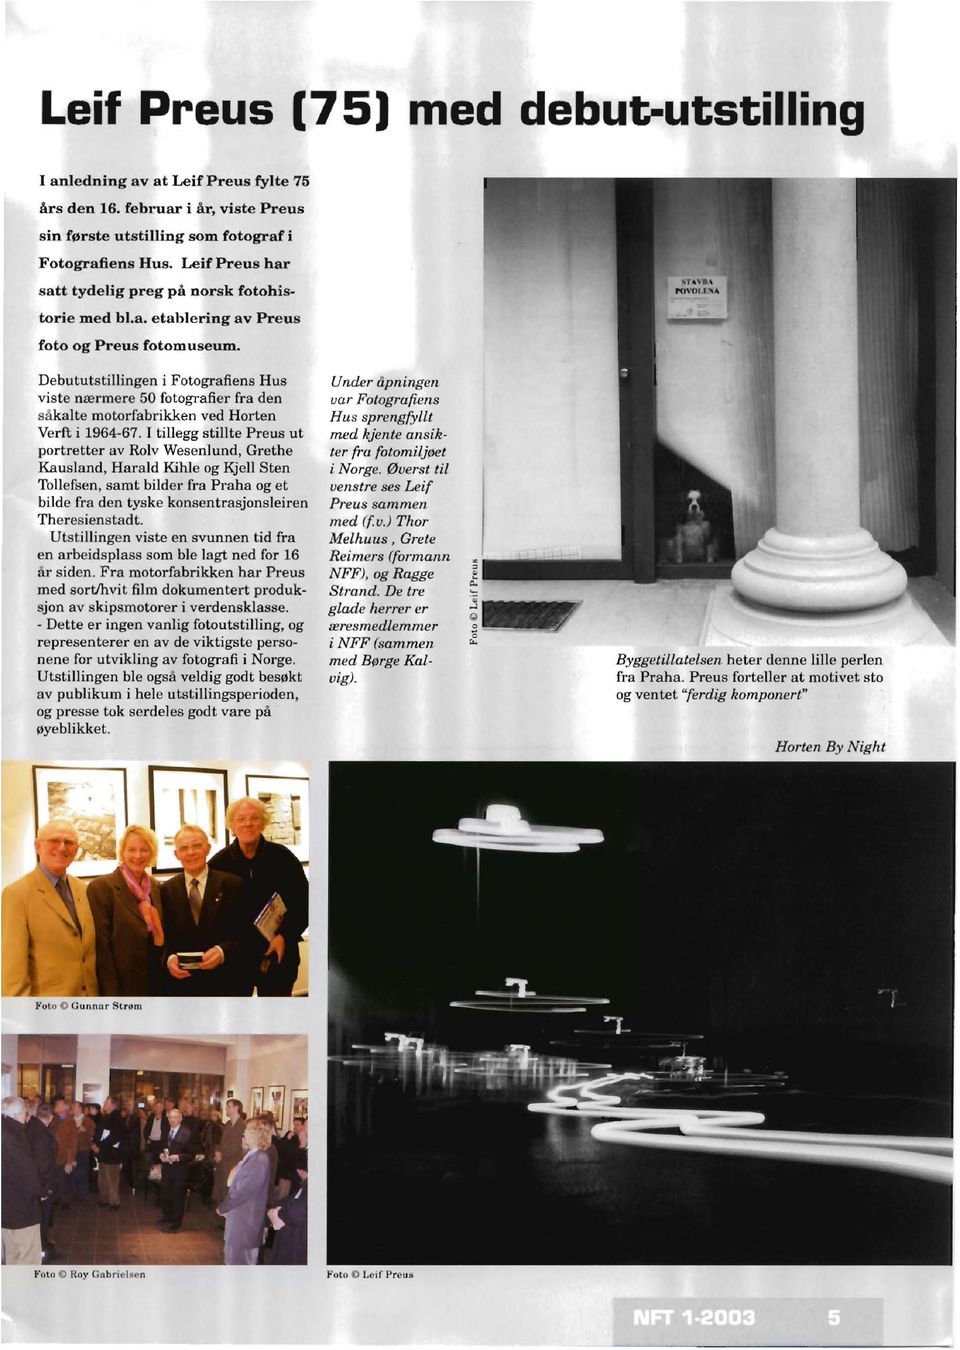 Debututstillingen i Fotografiens Hus viste nærmere 50 fotografier fra den s kalte motorfabrikken ved Horten Verft i 1964-67.